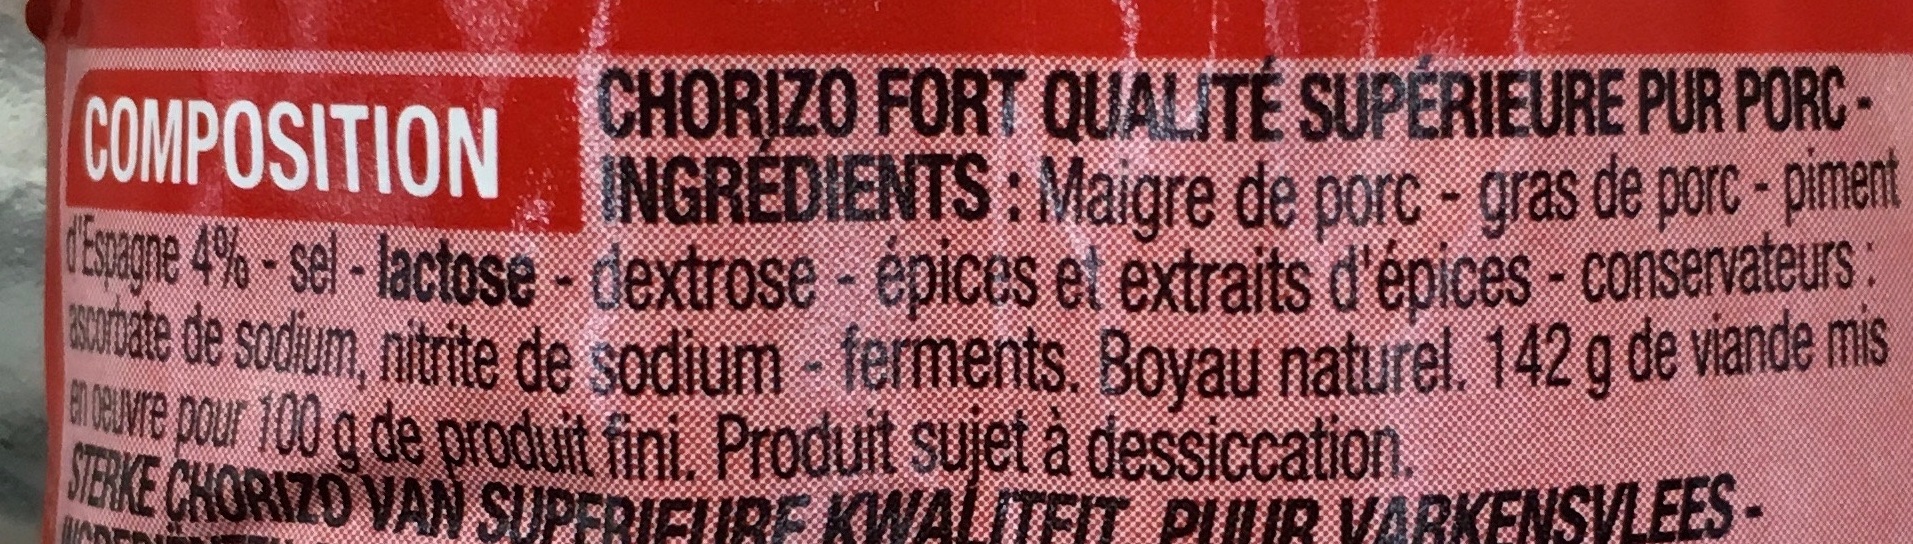 Chorizo fort qualité supérieure aux piments d'Espagne - Ingredients - fr